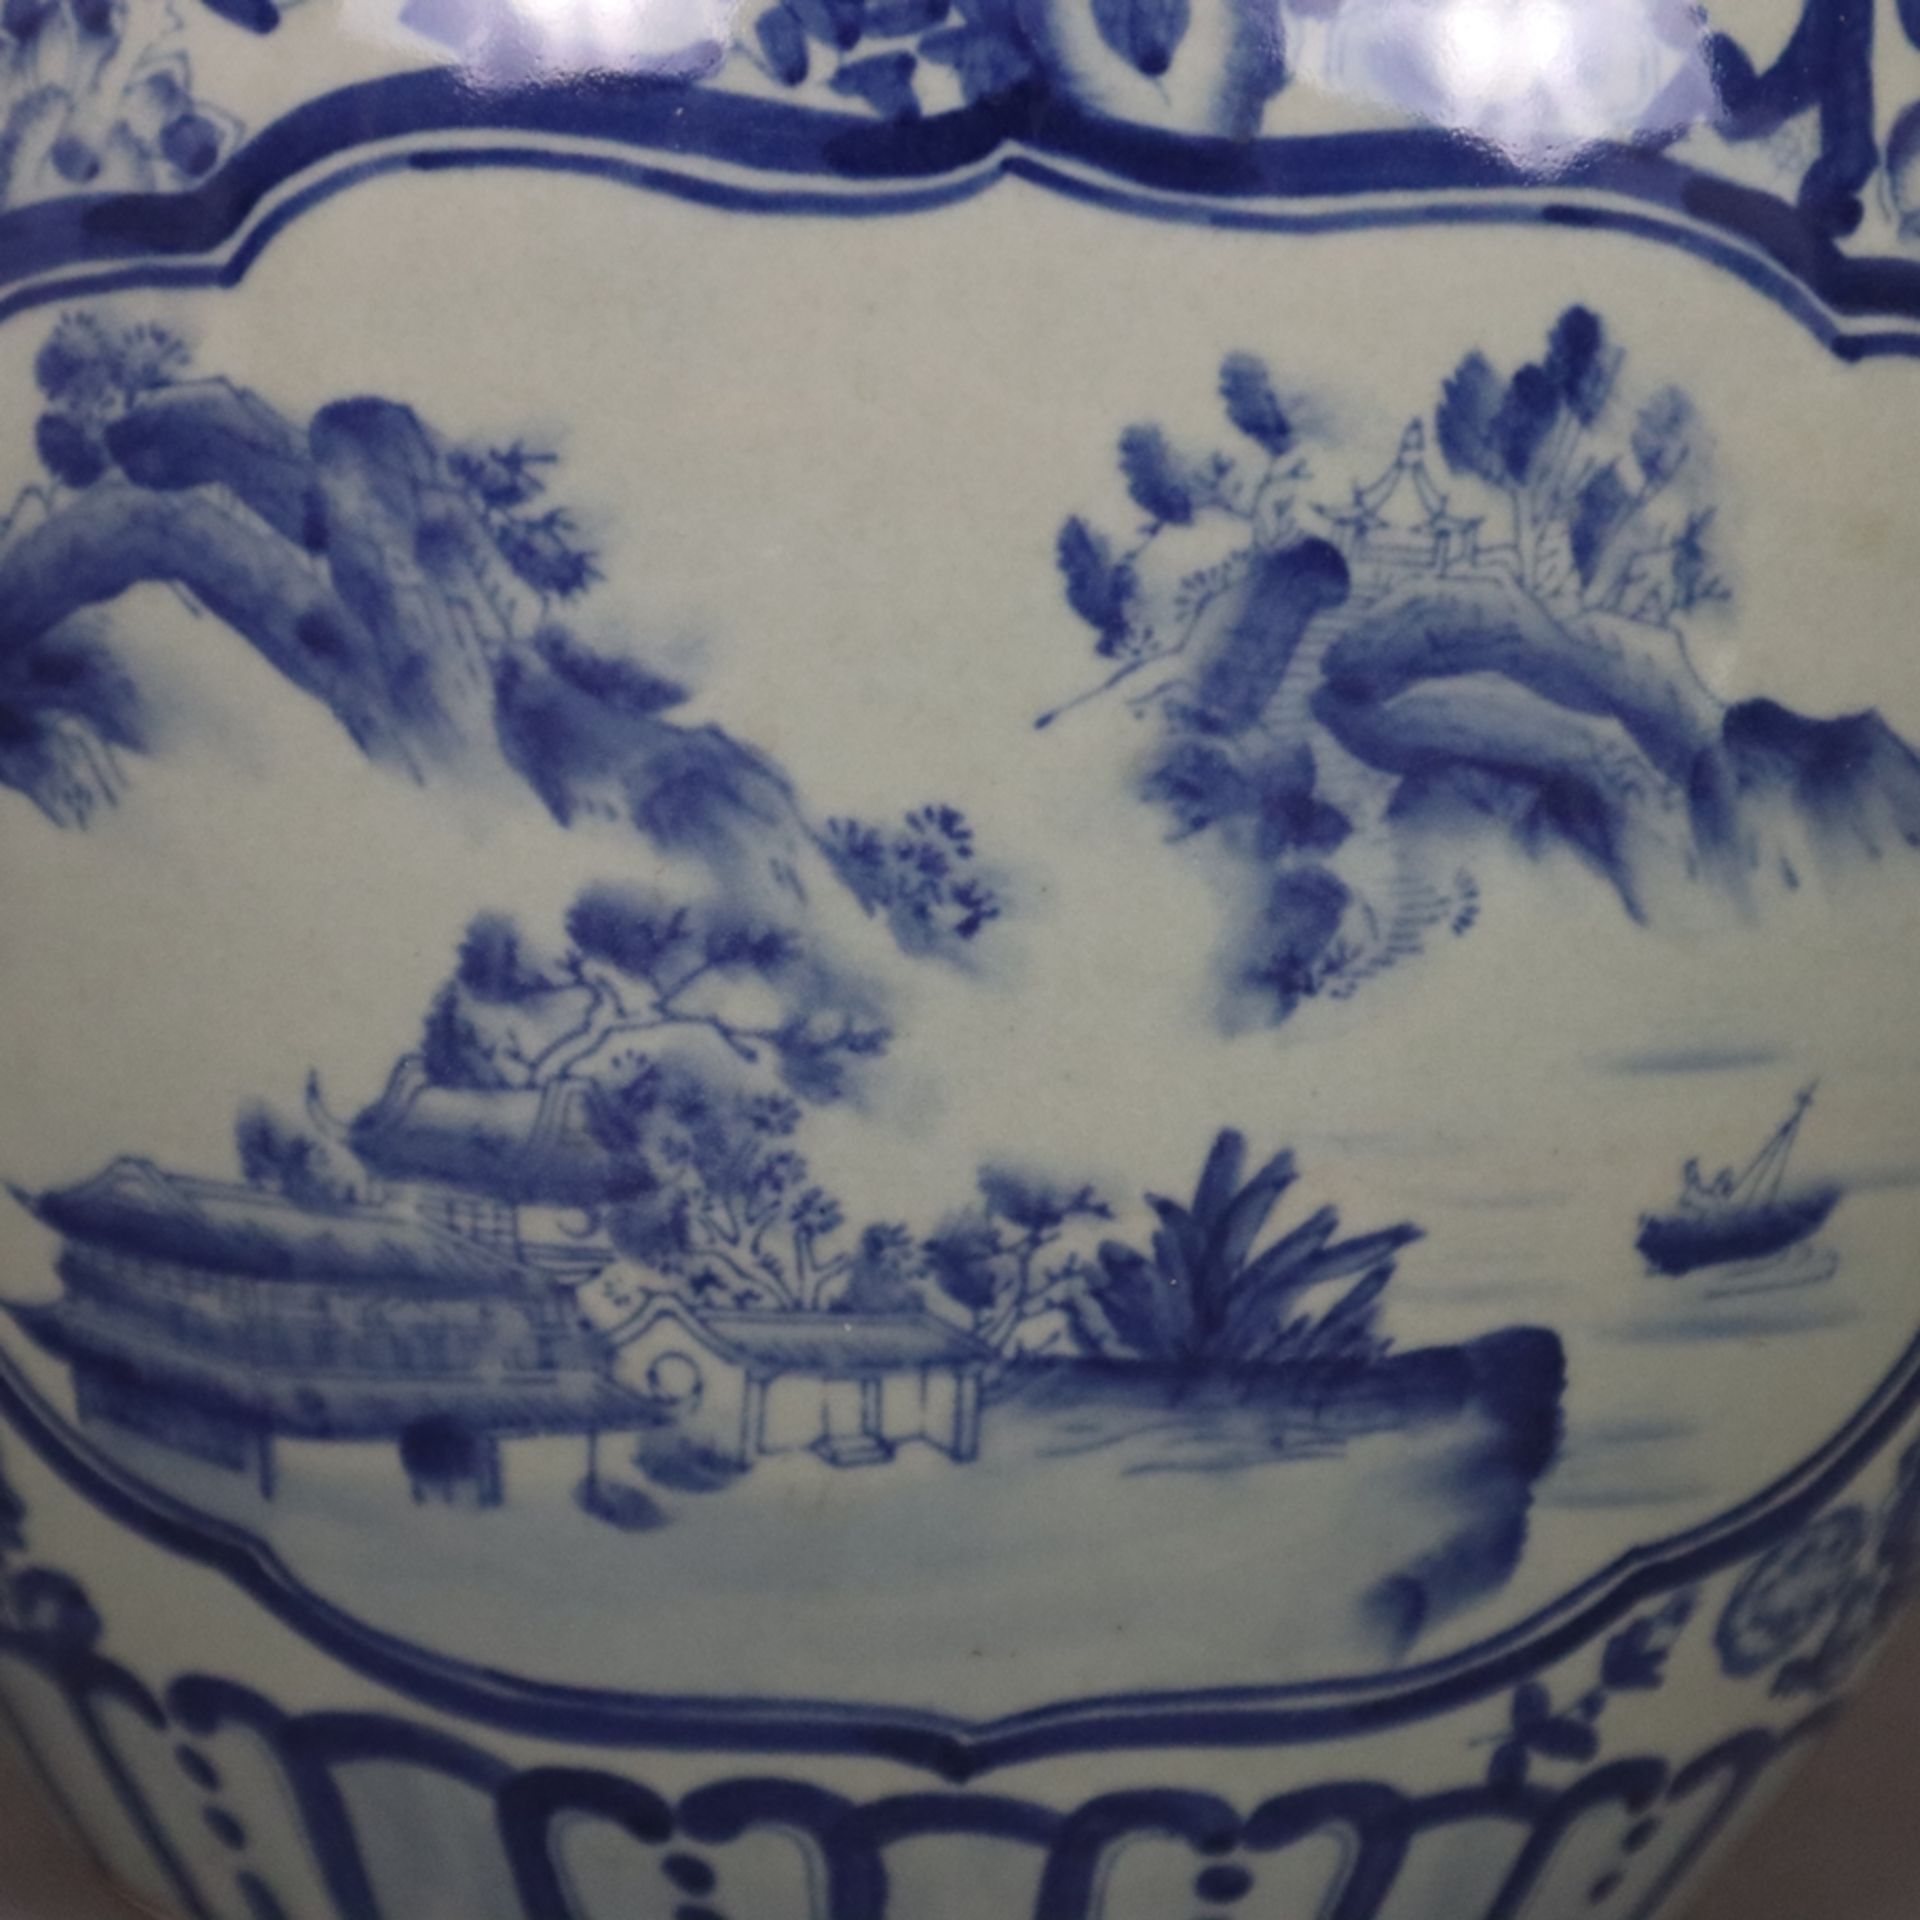 Blau-weißer Cachepot - China, 20. Jh., Porzellan, blau-weiß bemalt, bauchiger Korpus mit eingezogen - Bild 3 aus 9